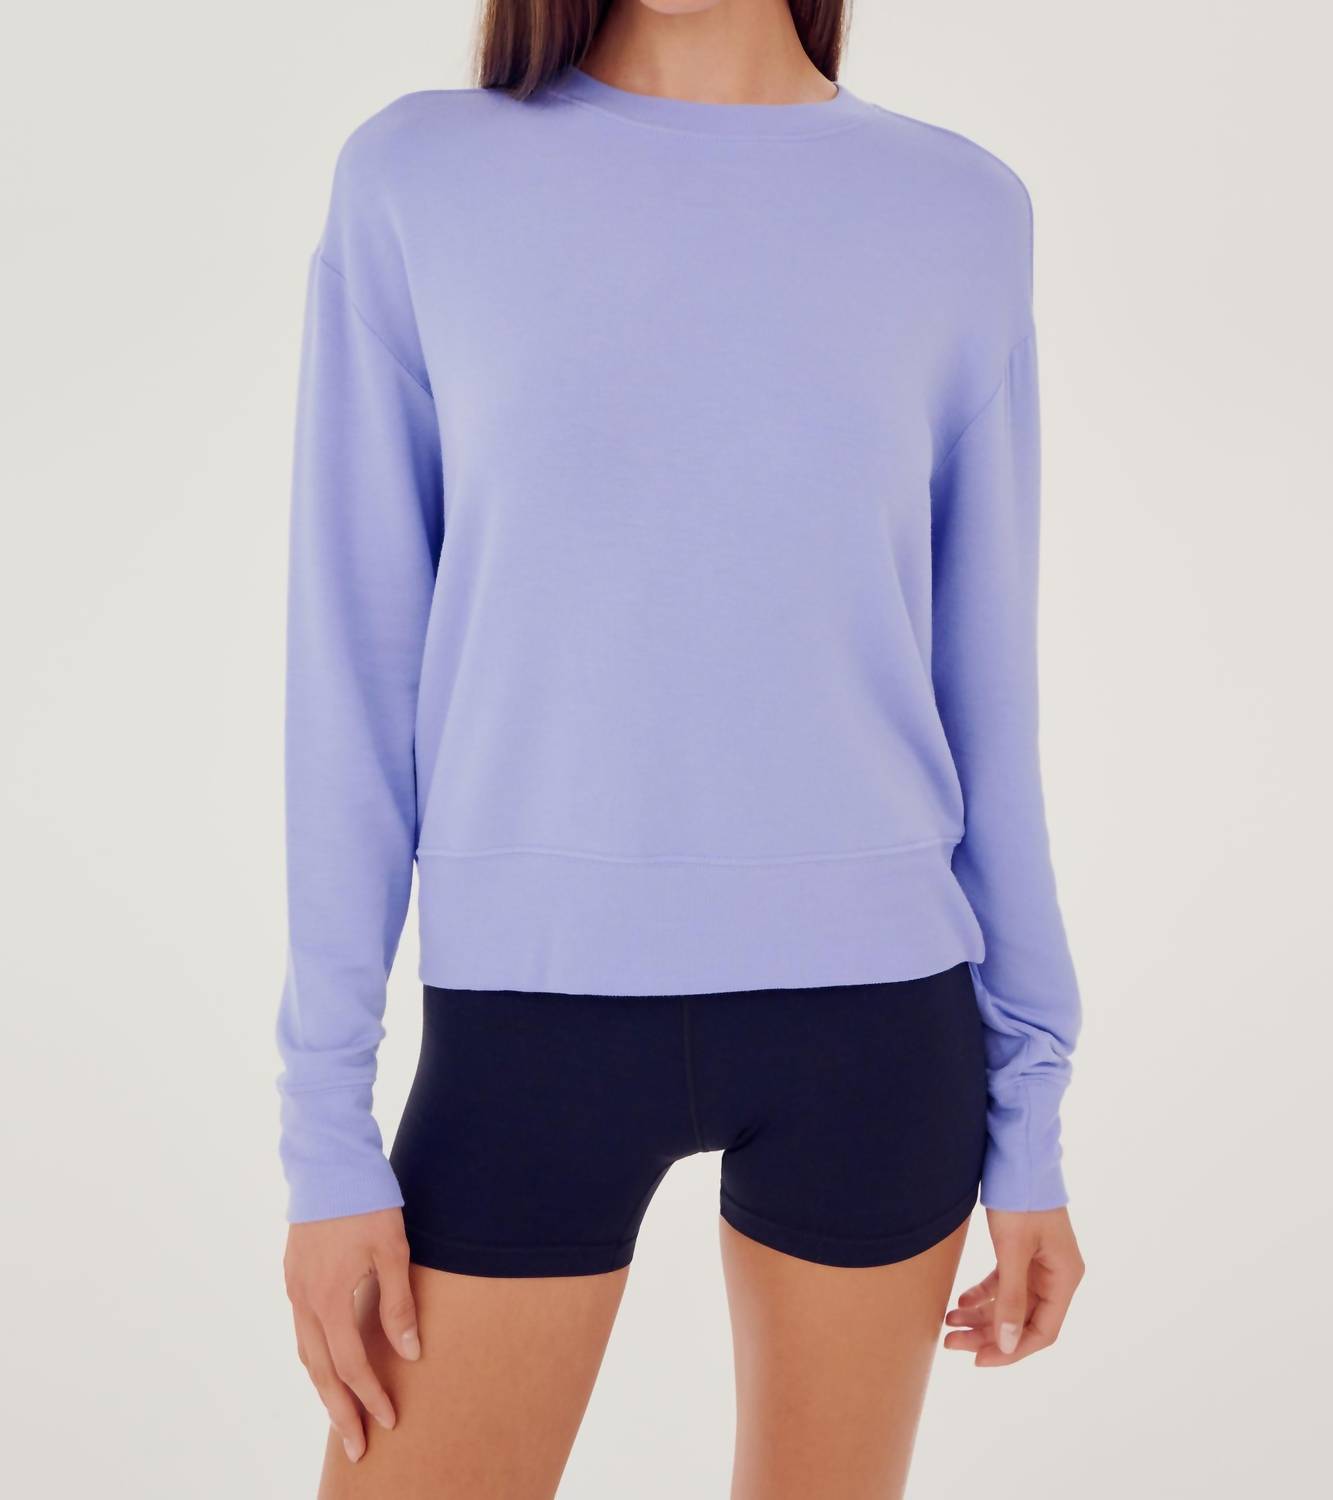 Splits59 Sonja Fleece Sweatshirt In Purple Haze In Multi